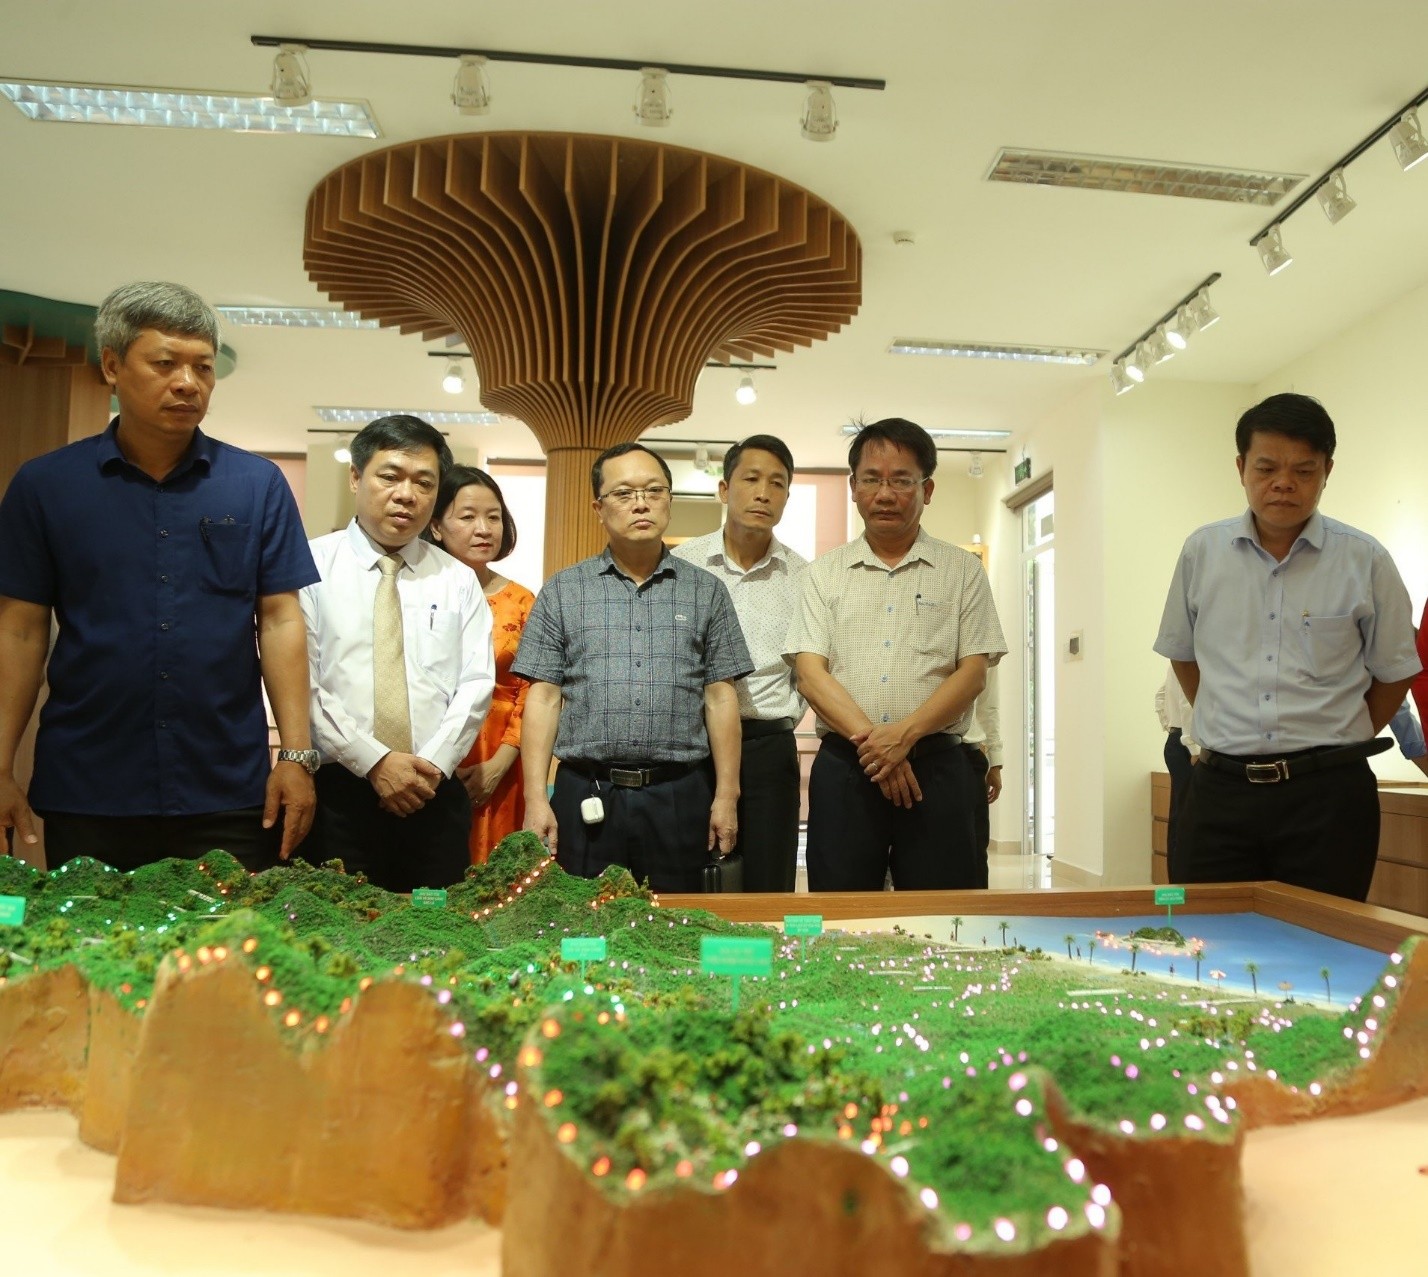 Quảng Nam: Khai trương Bảo tàng đa dạng sinh học cấp tỉnh đầu tiên trong cả nước